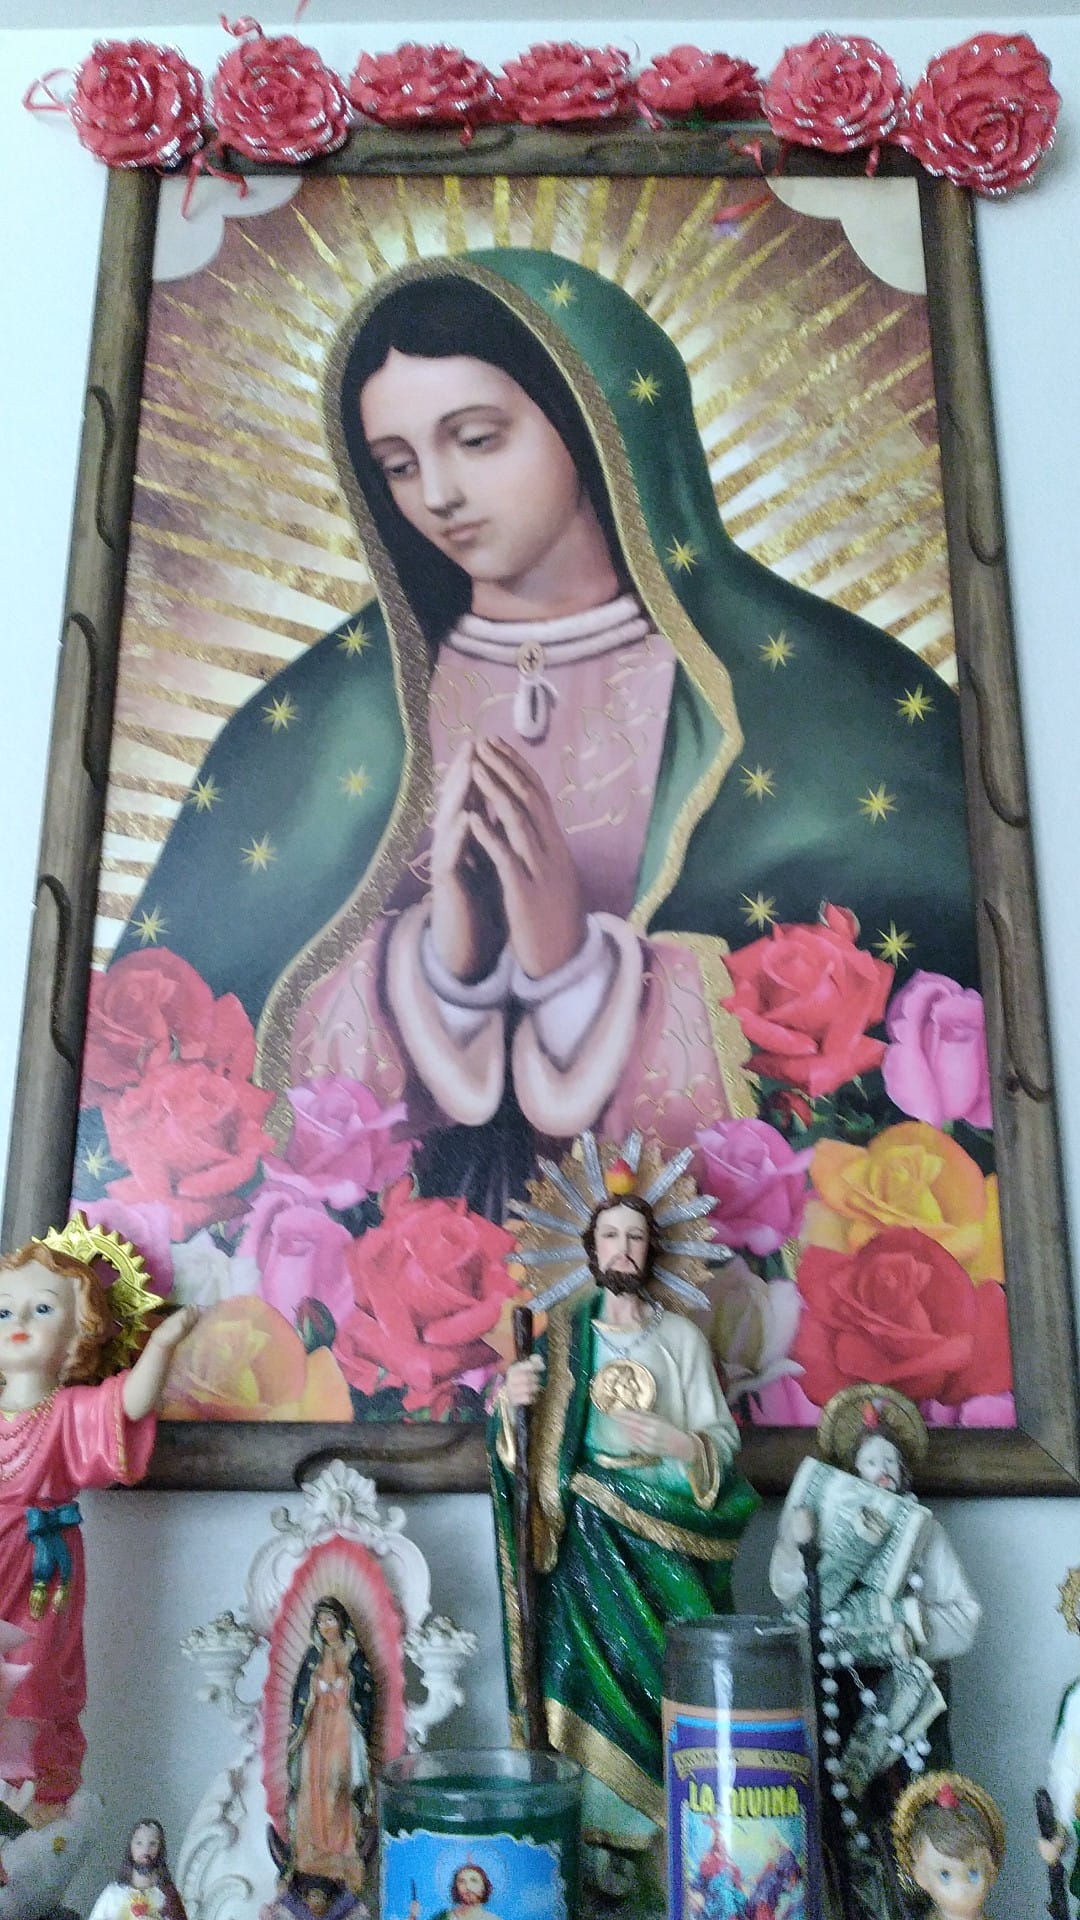 Cuadro al centro de Virgen de Guadalupe con imágenes de Santo niño de Atocha, San Judas Tadeo y veladoras en la parte de abajo